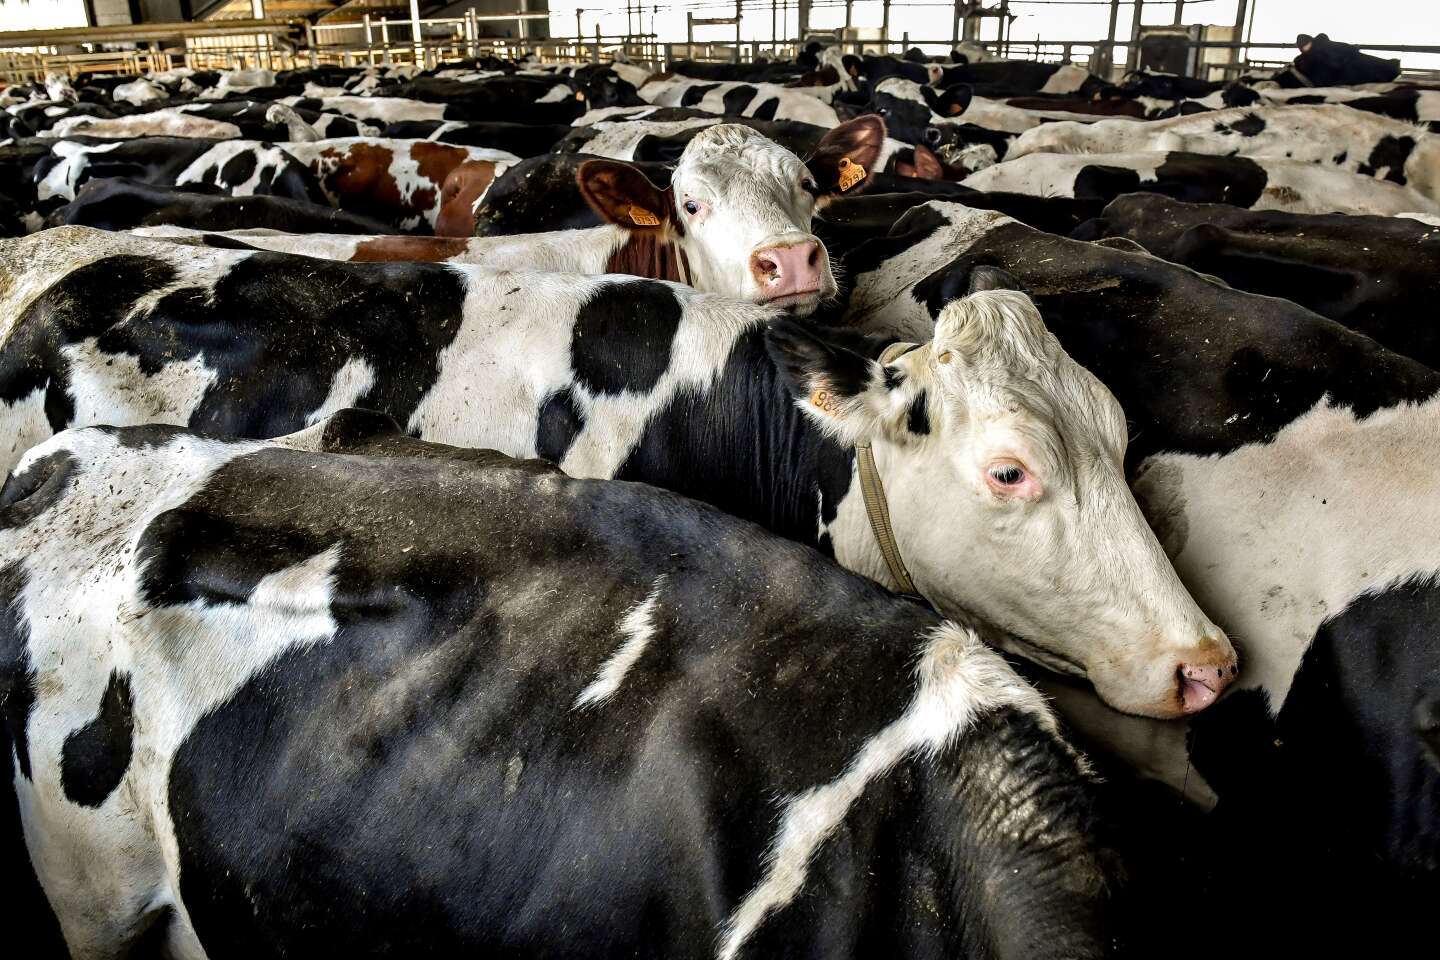 « Face aux enjeux moraux et juridiques découlant des exportations d’animaux vivants, nous soutenons un élevage de proximité respectueux »